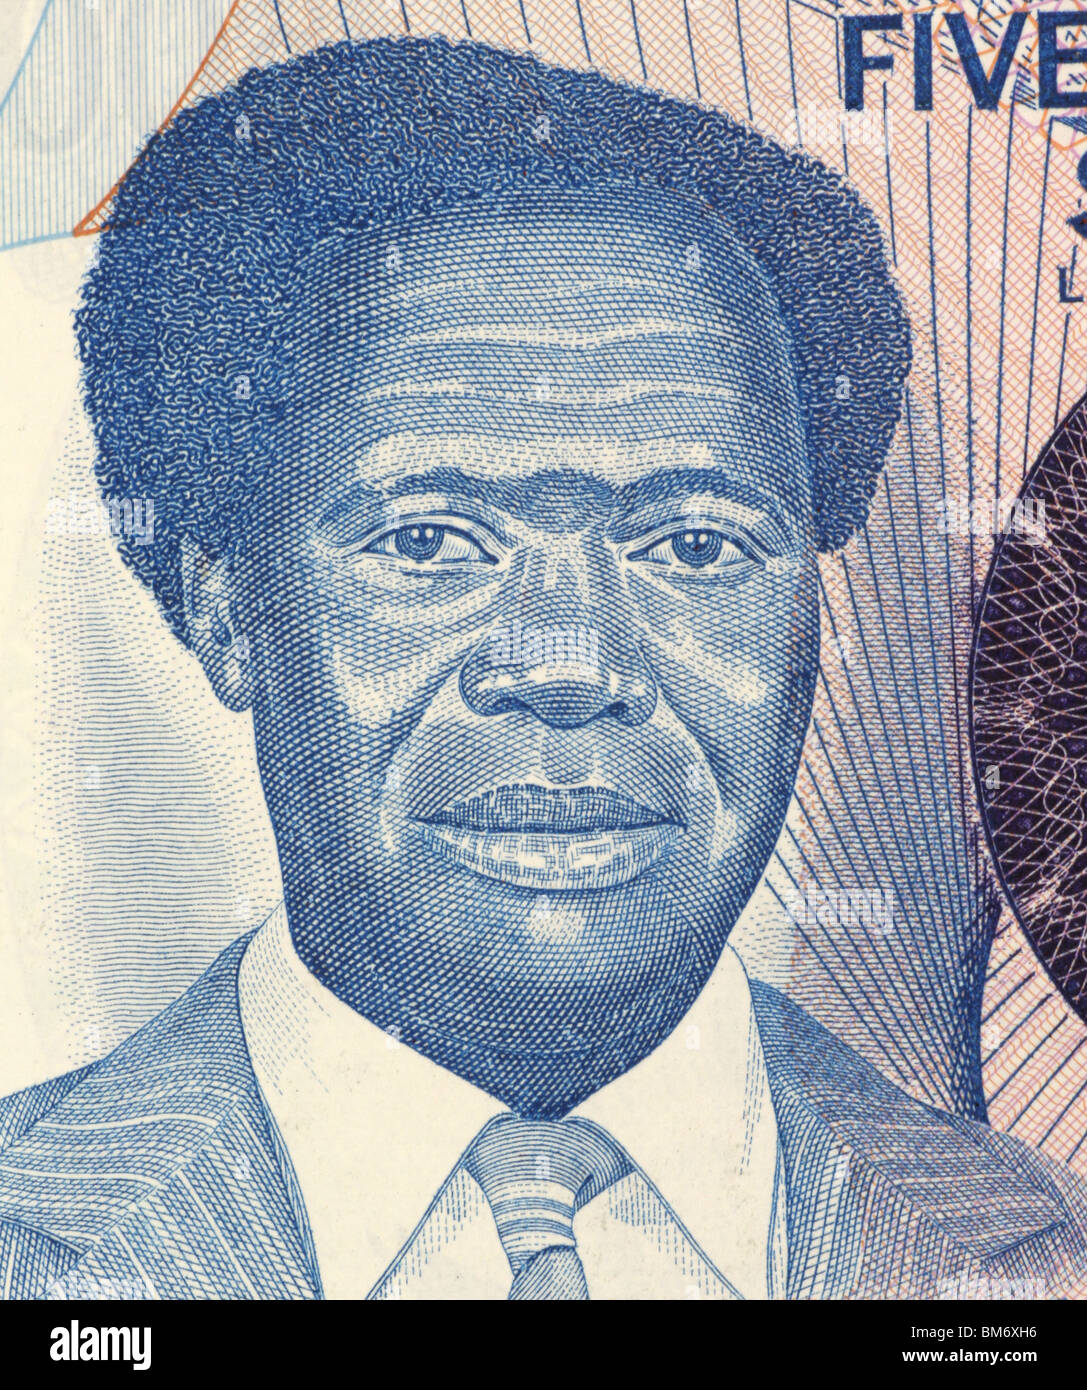 Milton Obote (1925-2005) auf 500 Schilling 1983 Banknote aus Uganda. Politische Führer, der Uganda in die Unabhängigkeit führte. Stockfoto